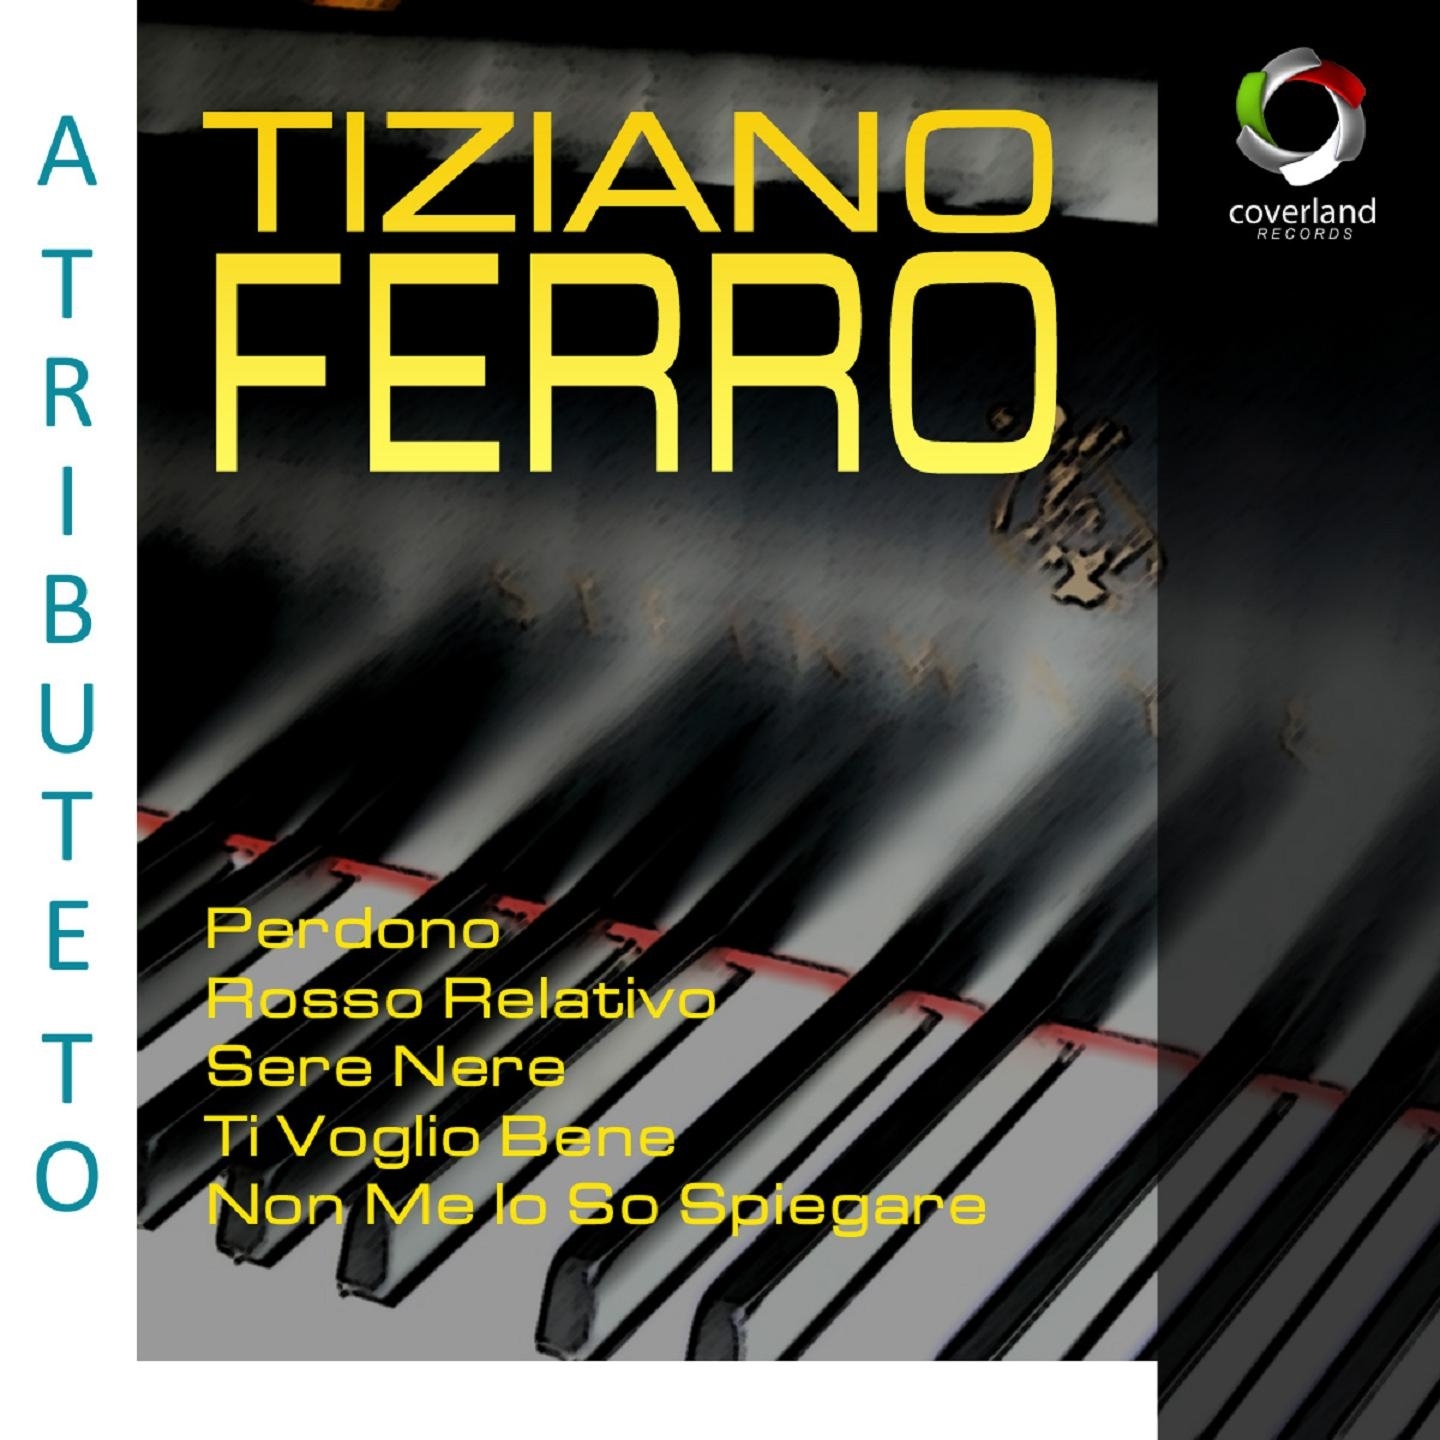 A Tribute To Tiziano Ferro